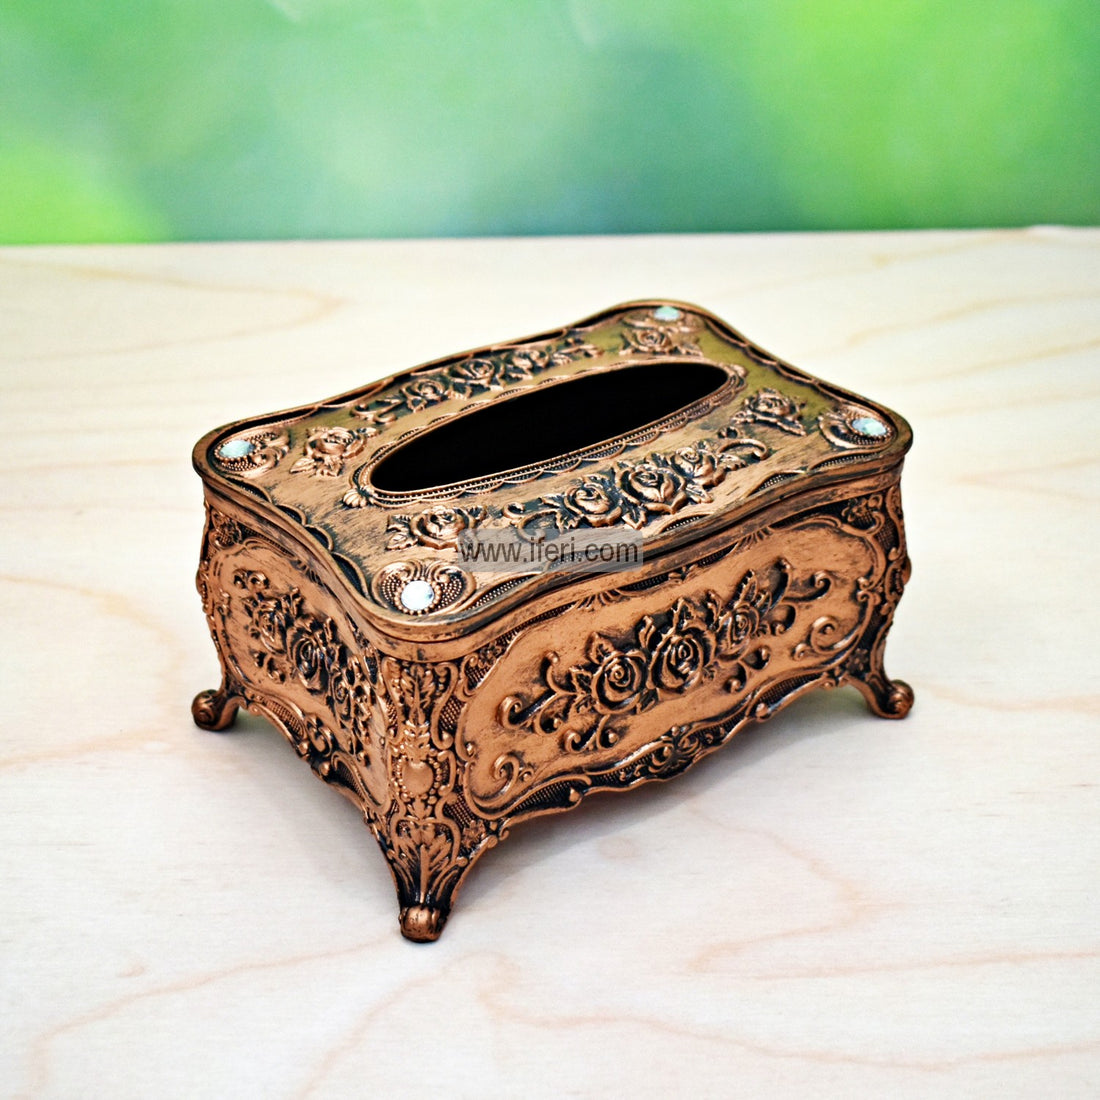 Buy Decorative Fiber Tissue Box through online from iferi.com